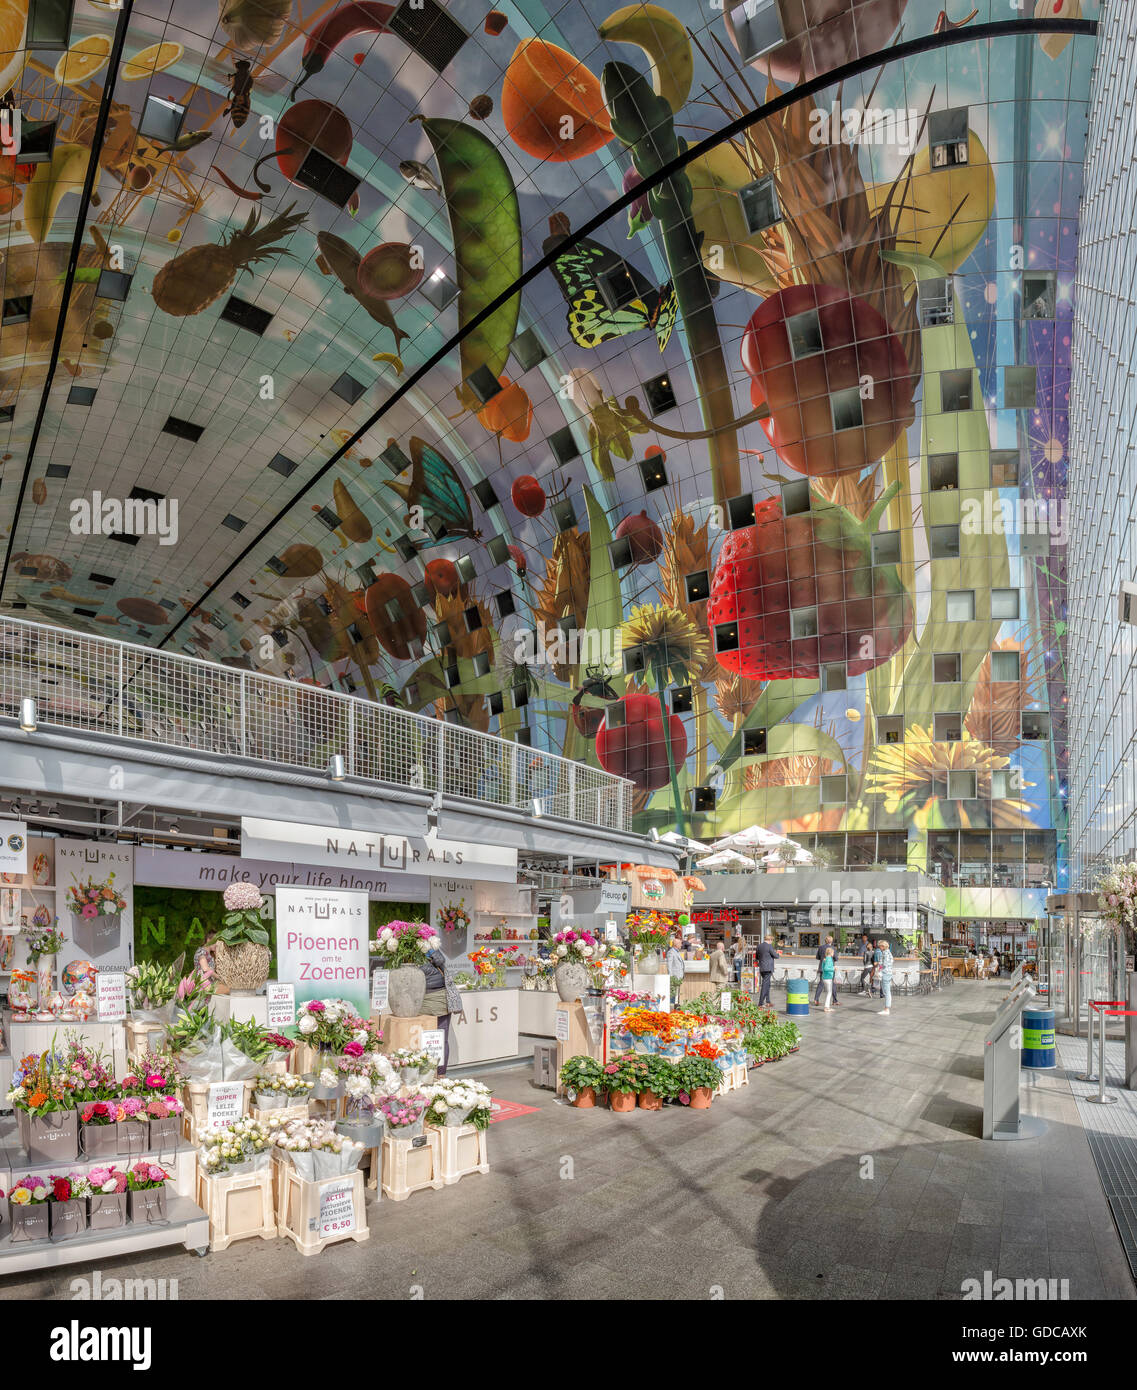 Rotterdam, die überdachte Markthalle, das Innere mit den bemalten Decke Stockfoto